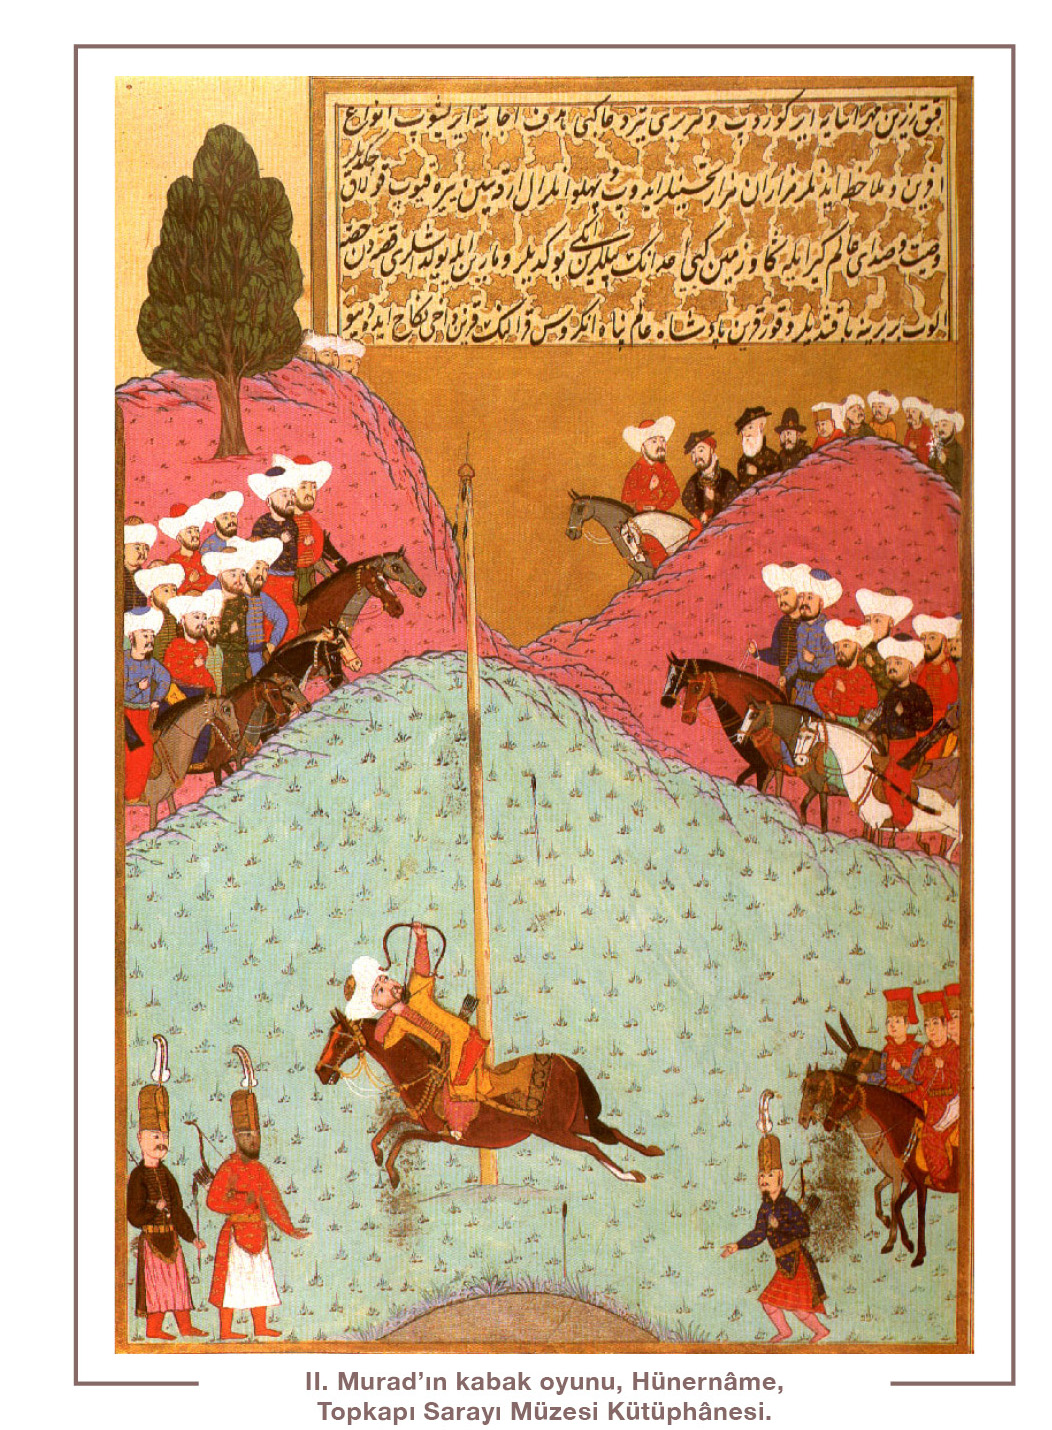 II. Murad’ın kabak oyunu, Hünernâme,  Topkapı Sarayı Müzesi Kütüphânesi.